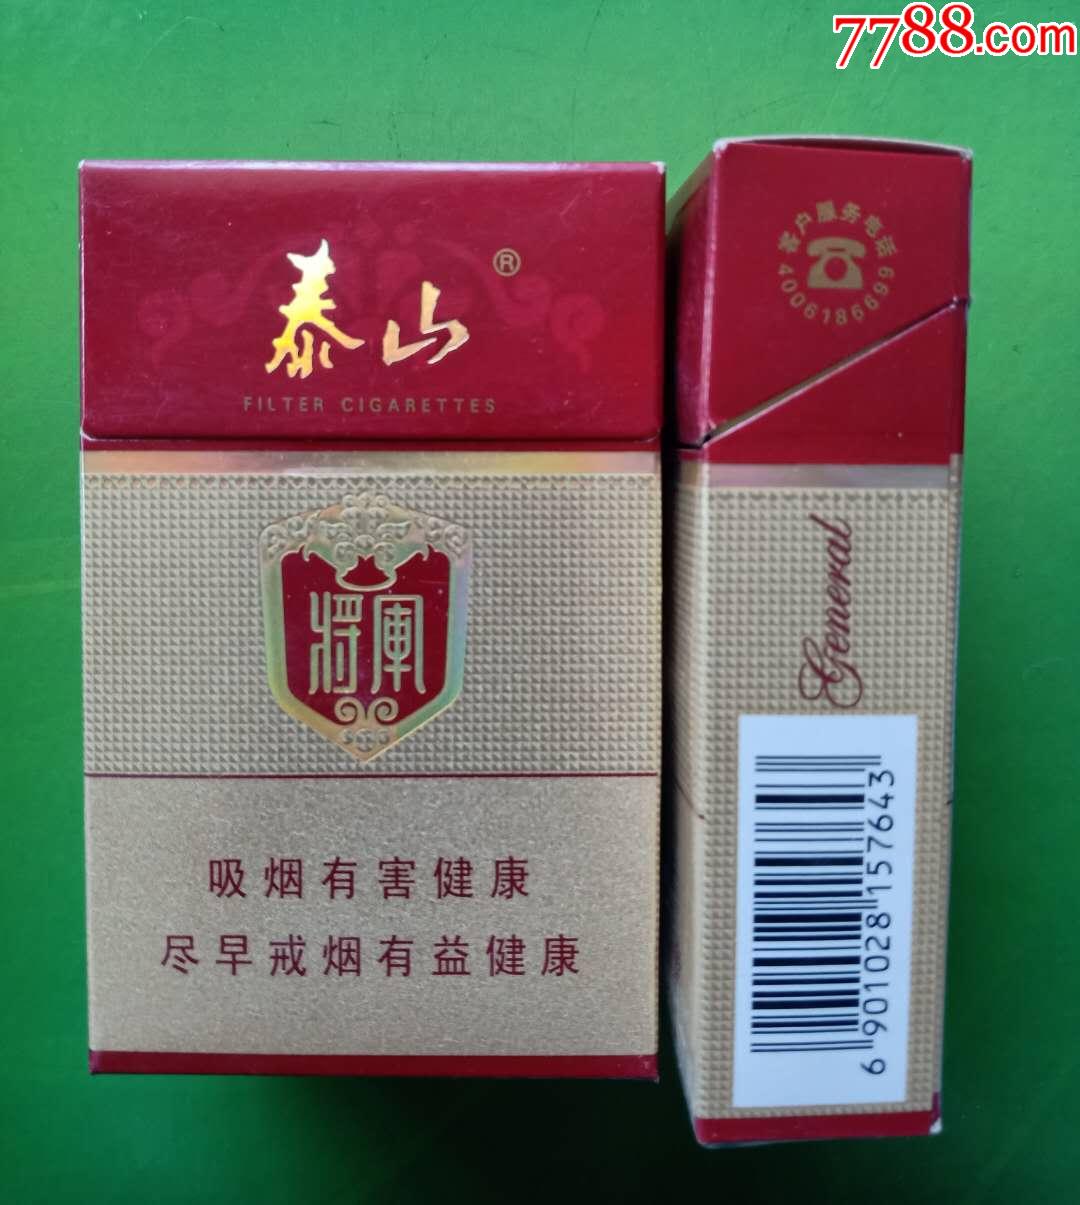 泰山常胜将军新品香烟上市 常胜将军香烟价格仅为15元一包!